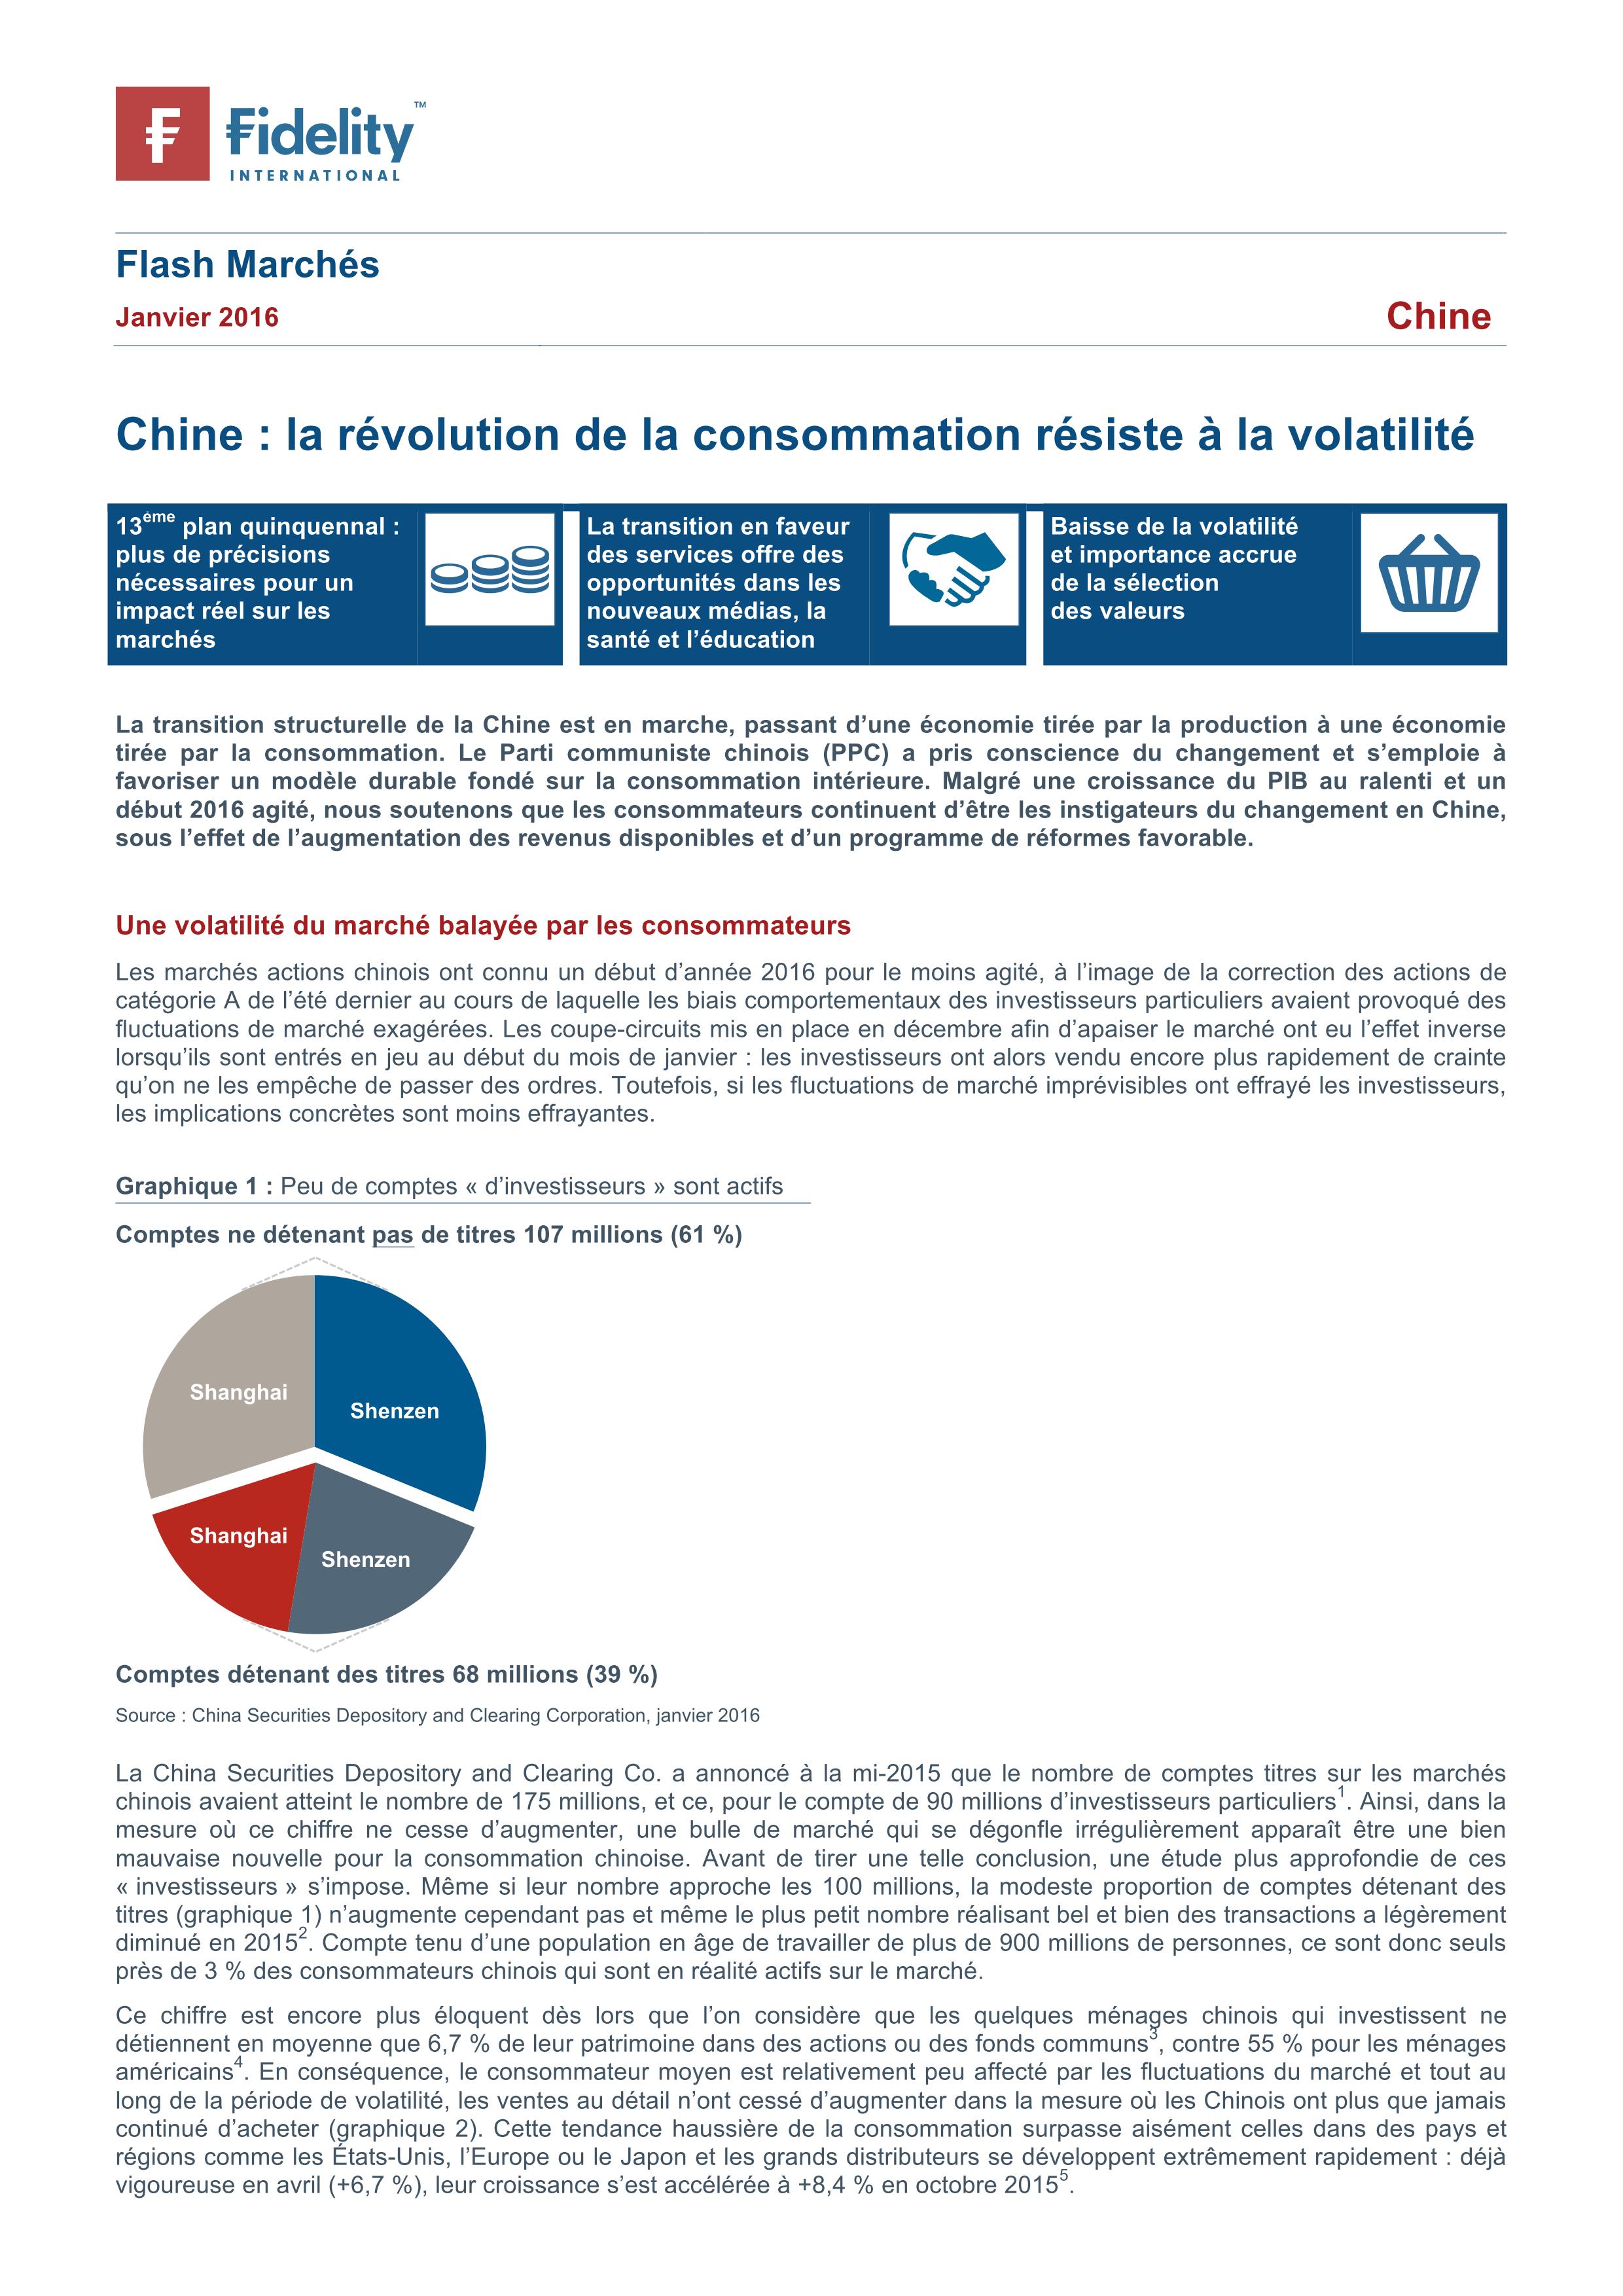 Fidelity - Flash Marchés- Chine la révolution de la consommation résiste à la volatilité - janvier 2016_01